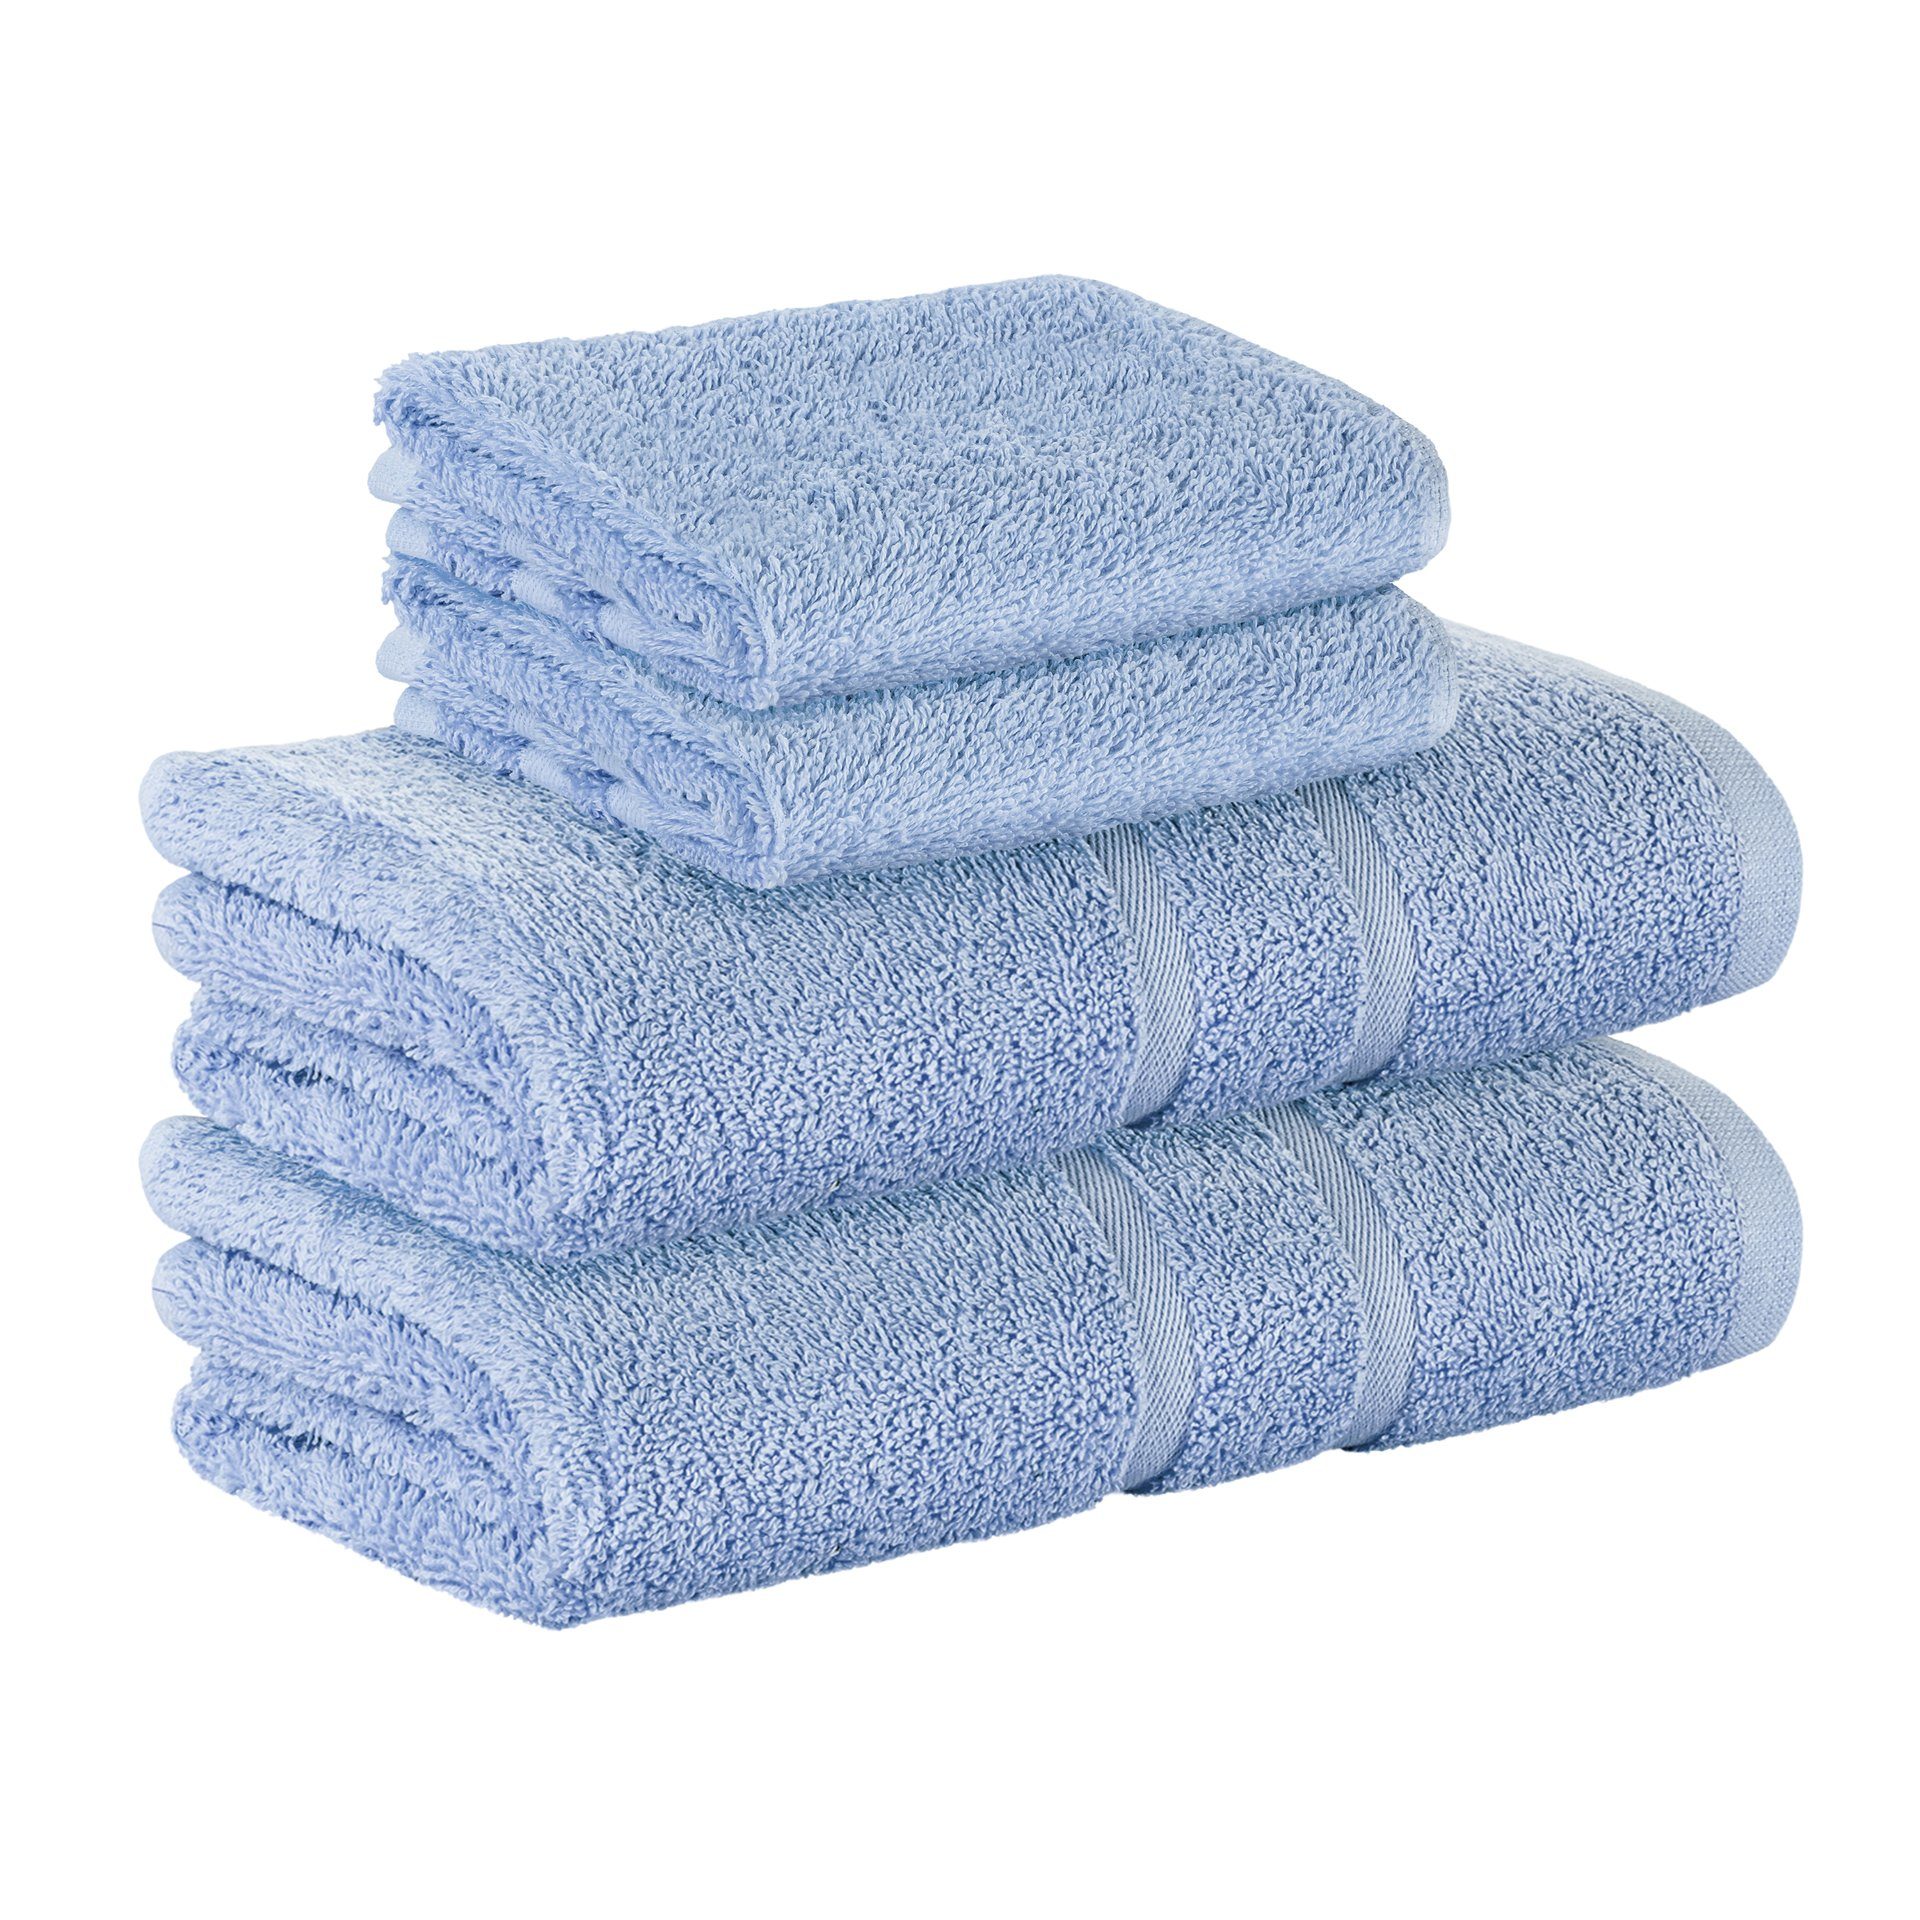 StickandShine Handtuch 2x Gästehandtuch 2x Handtücher als SET in verschiedenen Farben (4 Teilig) 100% Baumwolle 500 GSM Frottee 4er Handtuch Pack, 100% Baumwolle 500GSM Hellblau